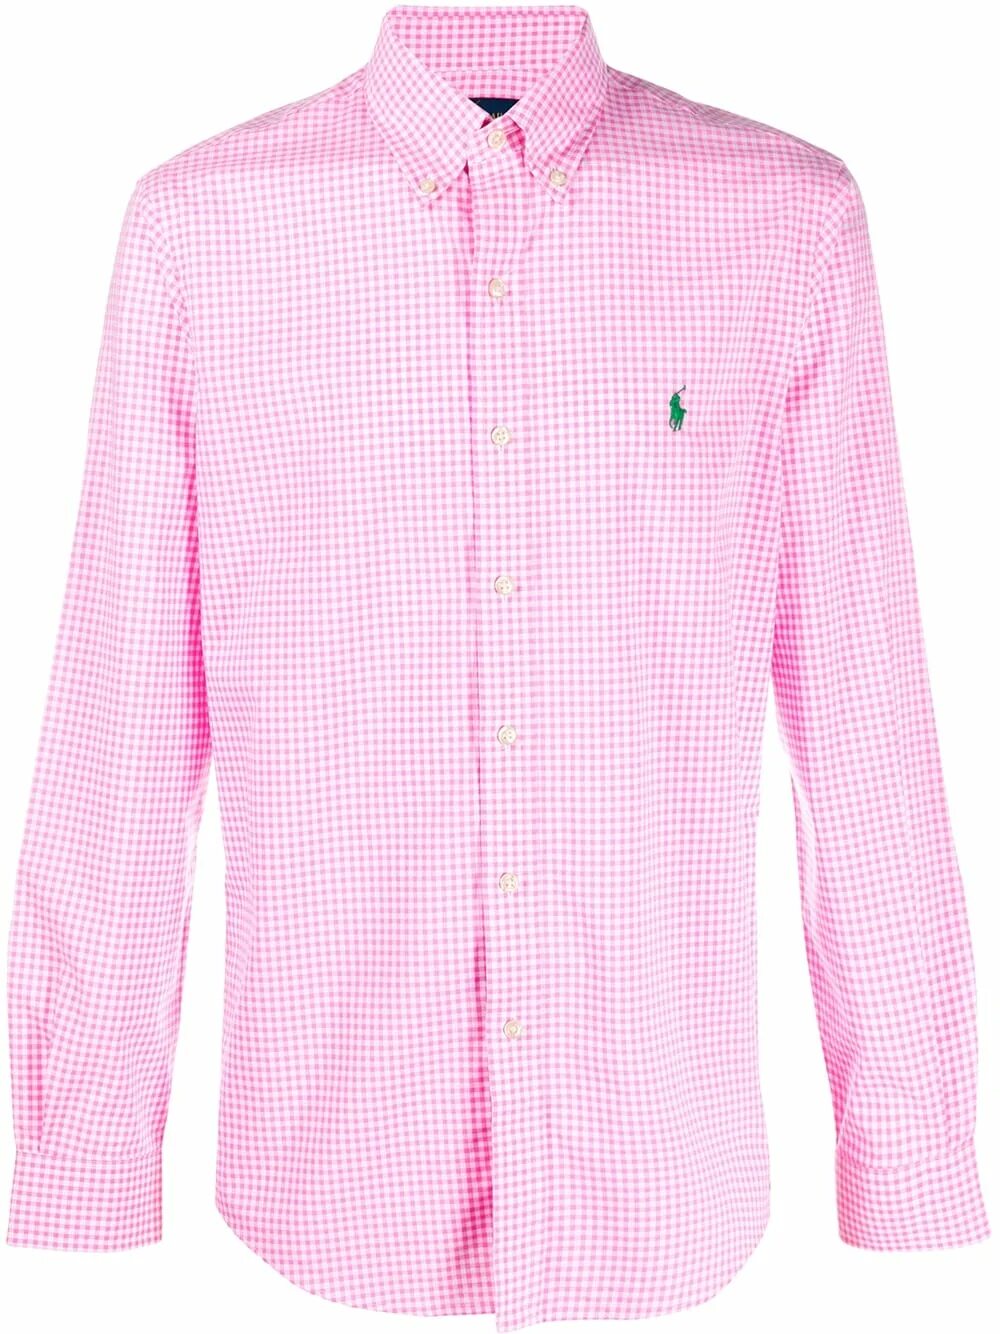 Розовая рубашка в полоску. Рубашка Polo Ralph Lauren. Ральф лаурен рубашка. Рубашка Ральф Лорен мужские. Рубашка поло Ральф Лорен.